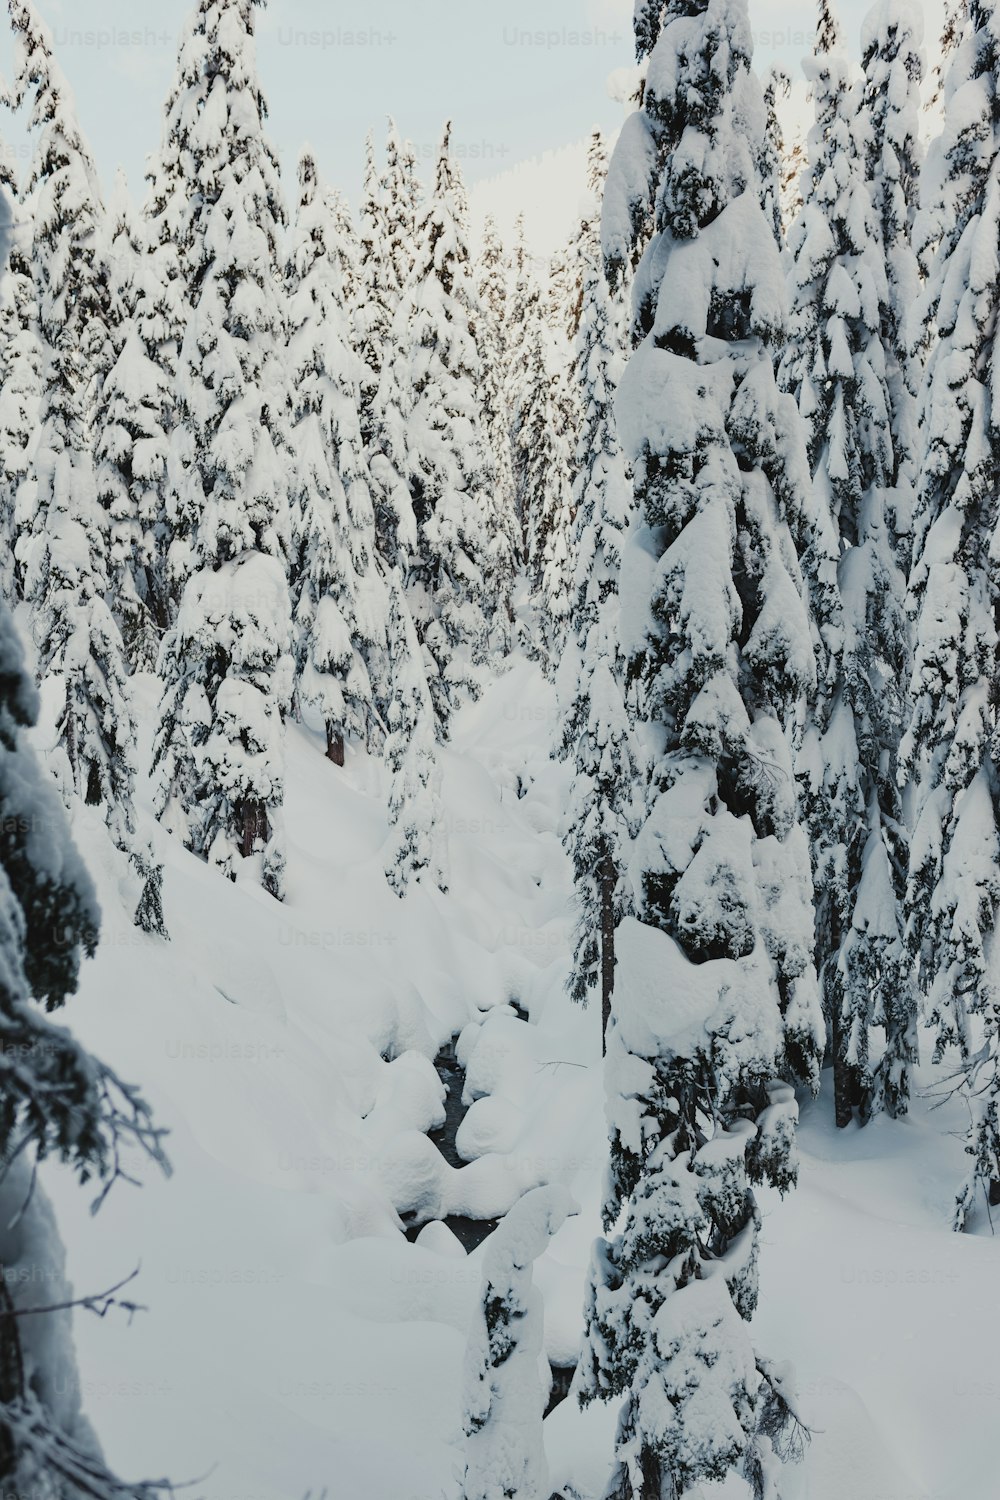 눈 덮인 숲 한가운데서 스키를 타는 사람